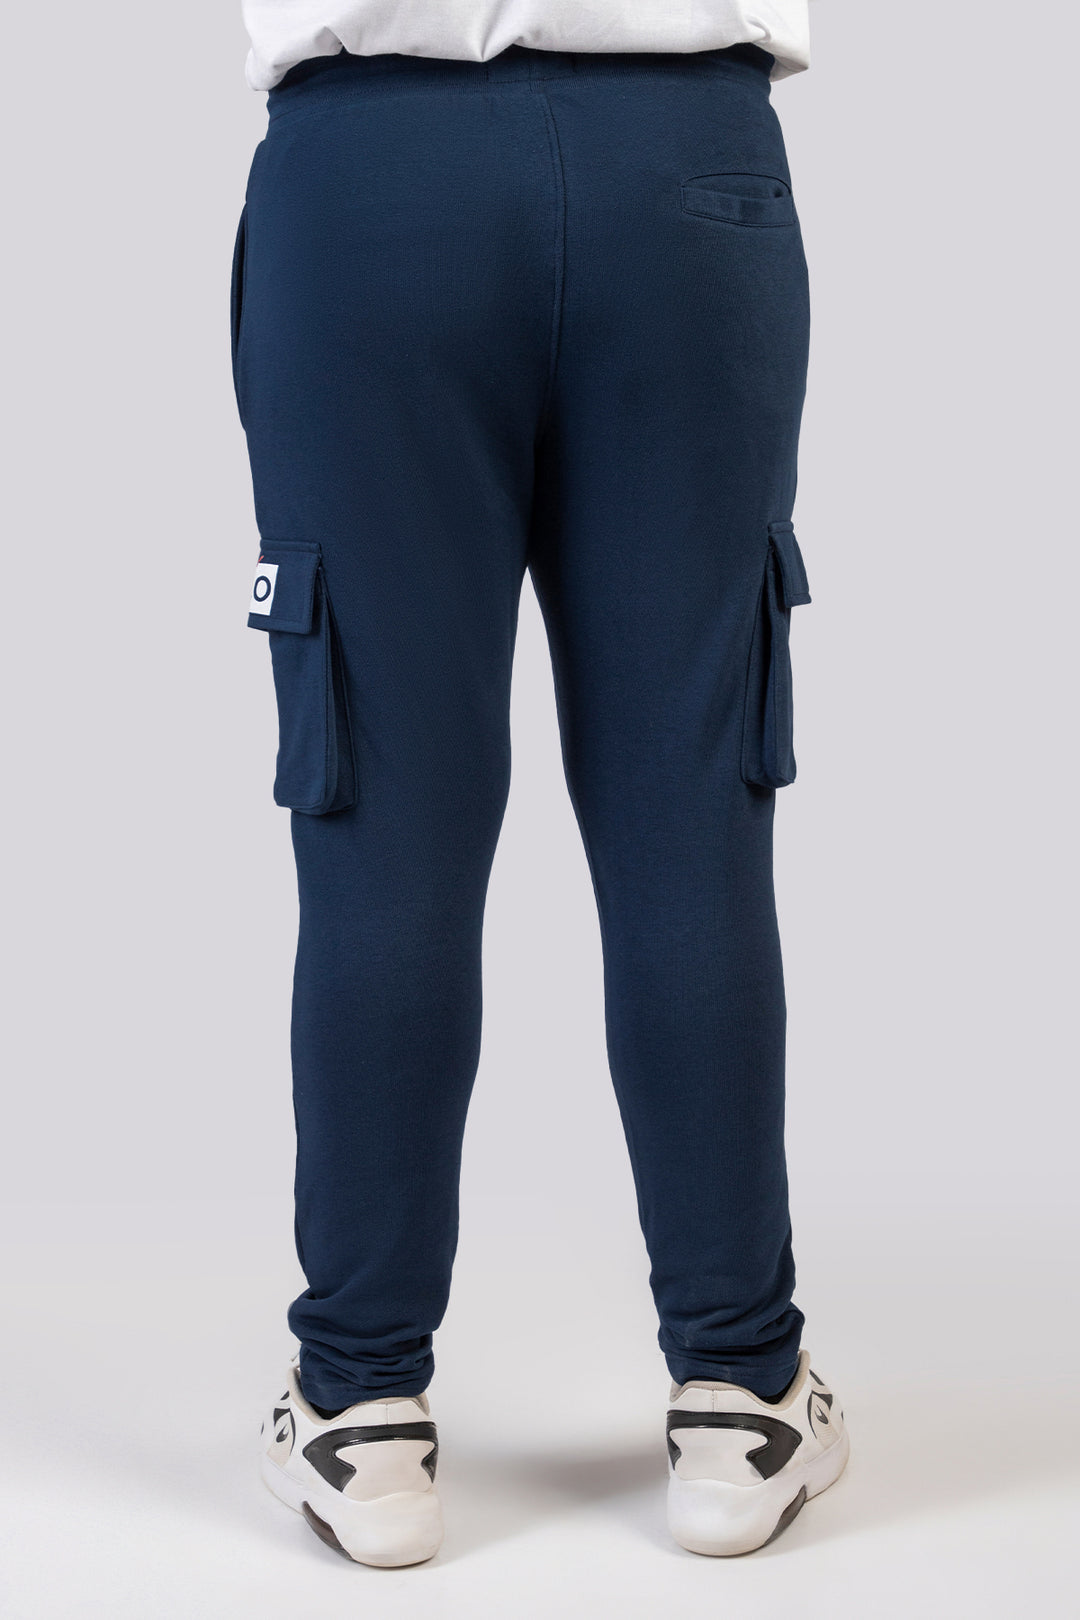 Navy Blue Cargo Jog Pants (Plus Size) - W23 - MTR090P